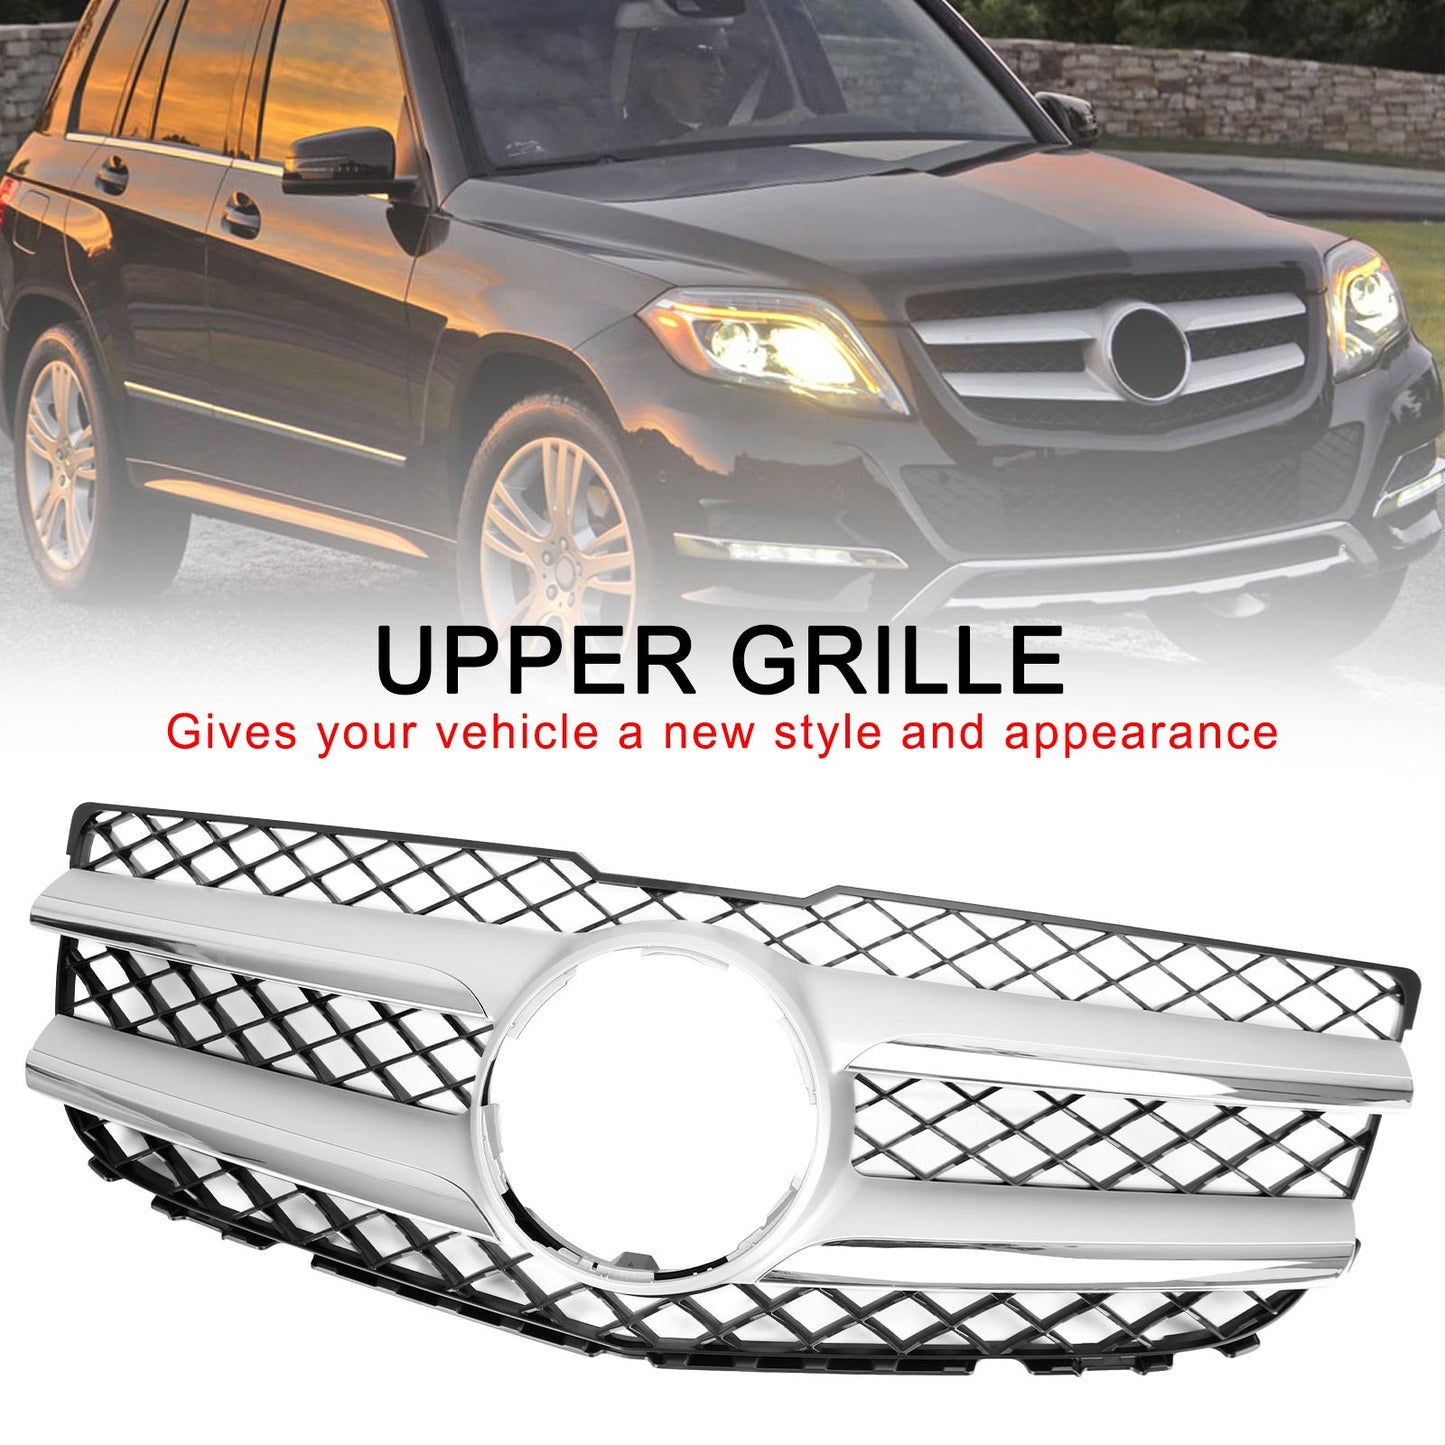 2013-2015 Mercedes-Benz GLK250 BLUETEC 4MATIC Sport Utility 4 portes Capot avant Grille de pare-chocs Grille 2048802983